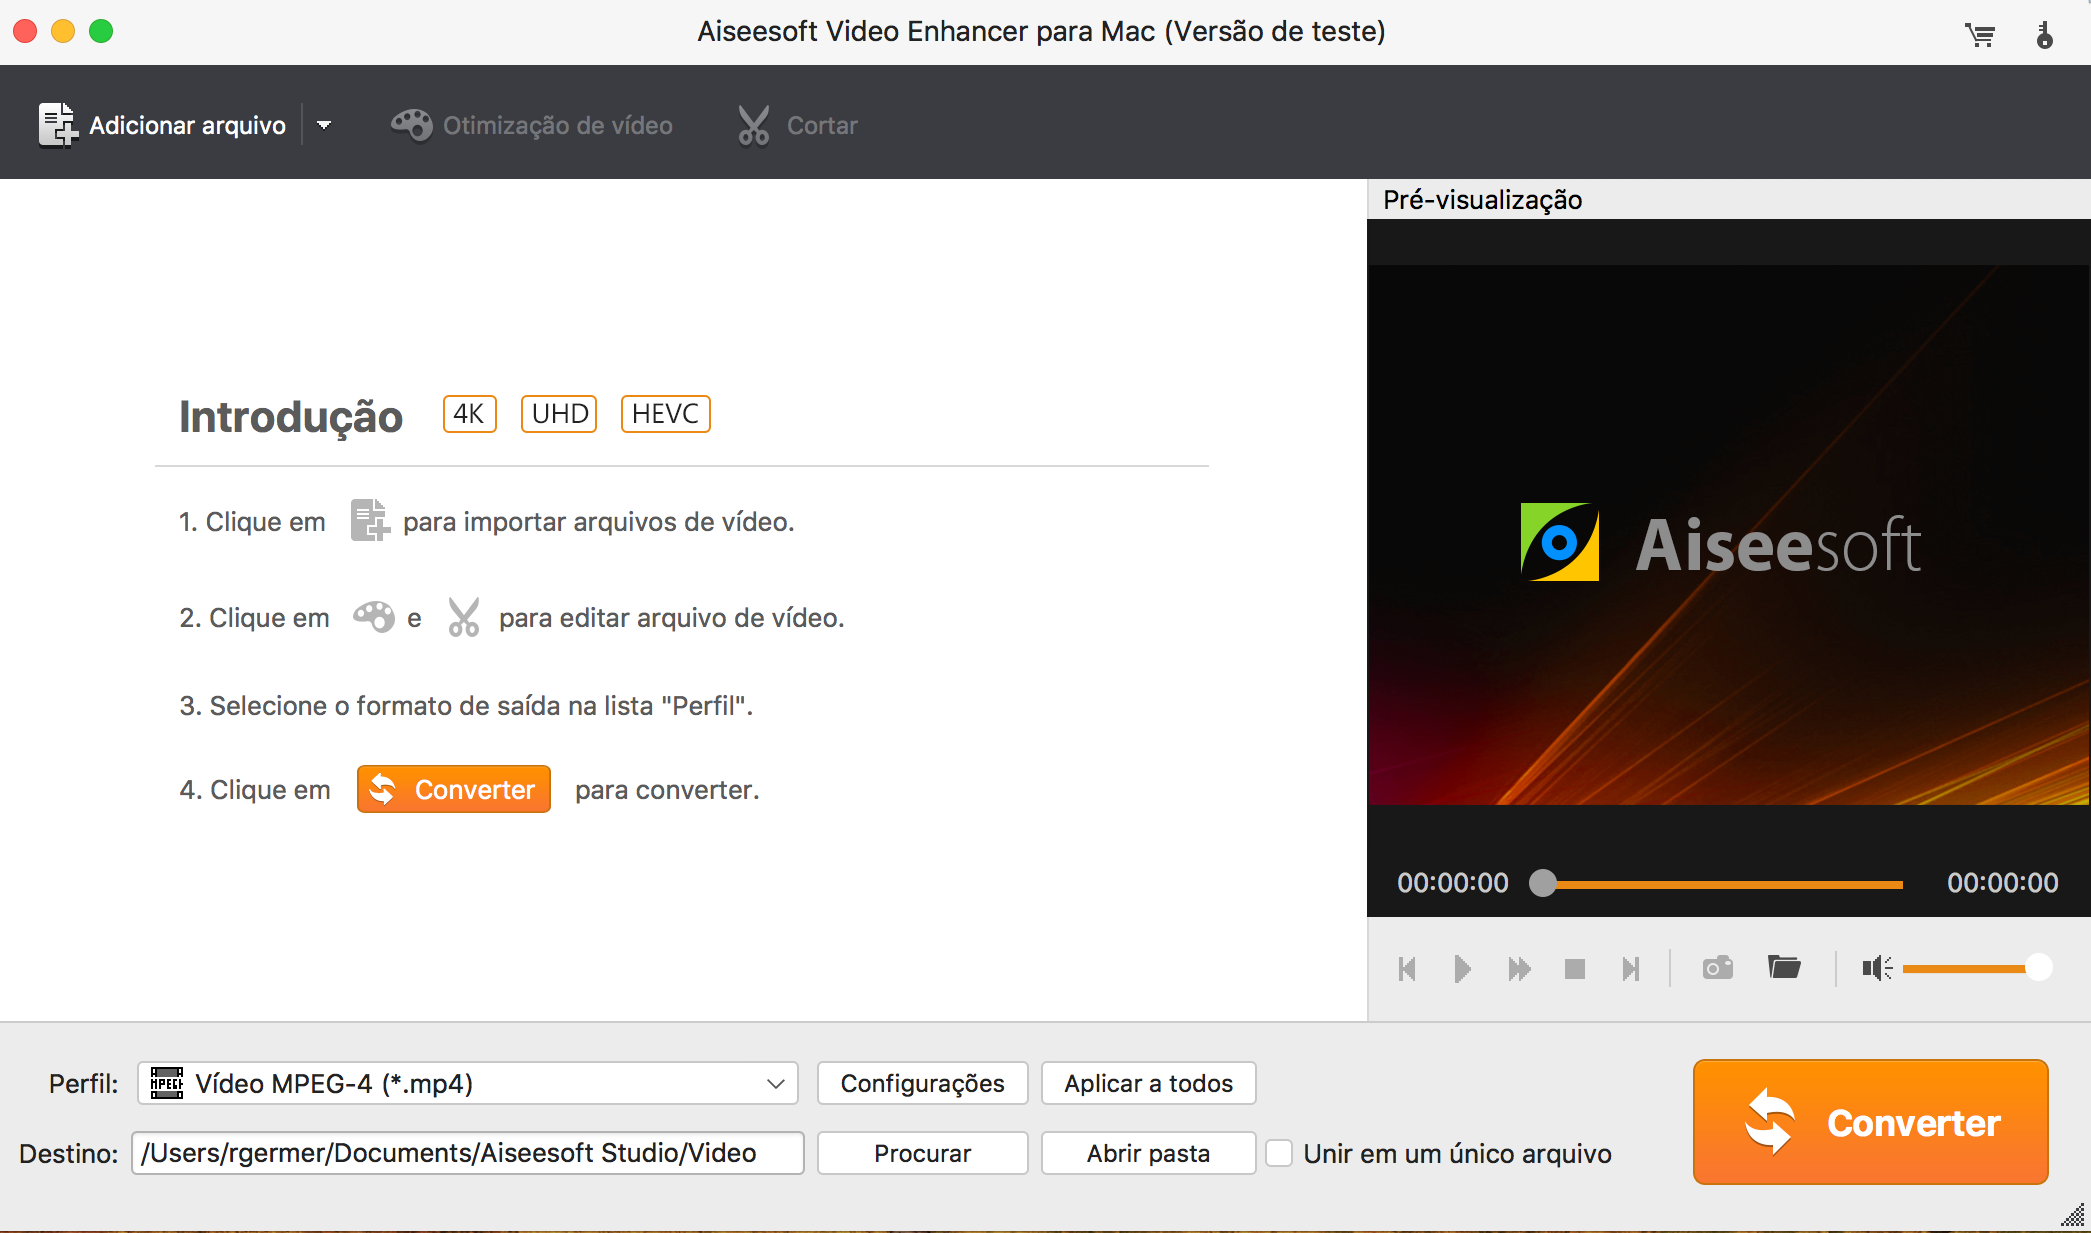 Tela de início do Aiseesoft Video Enhancer para Mac